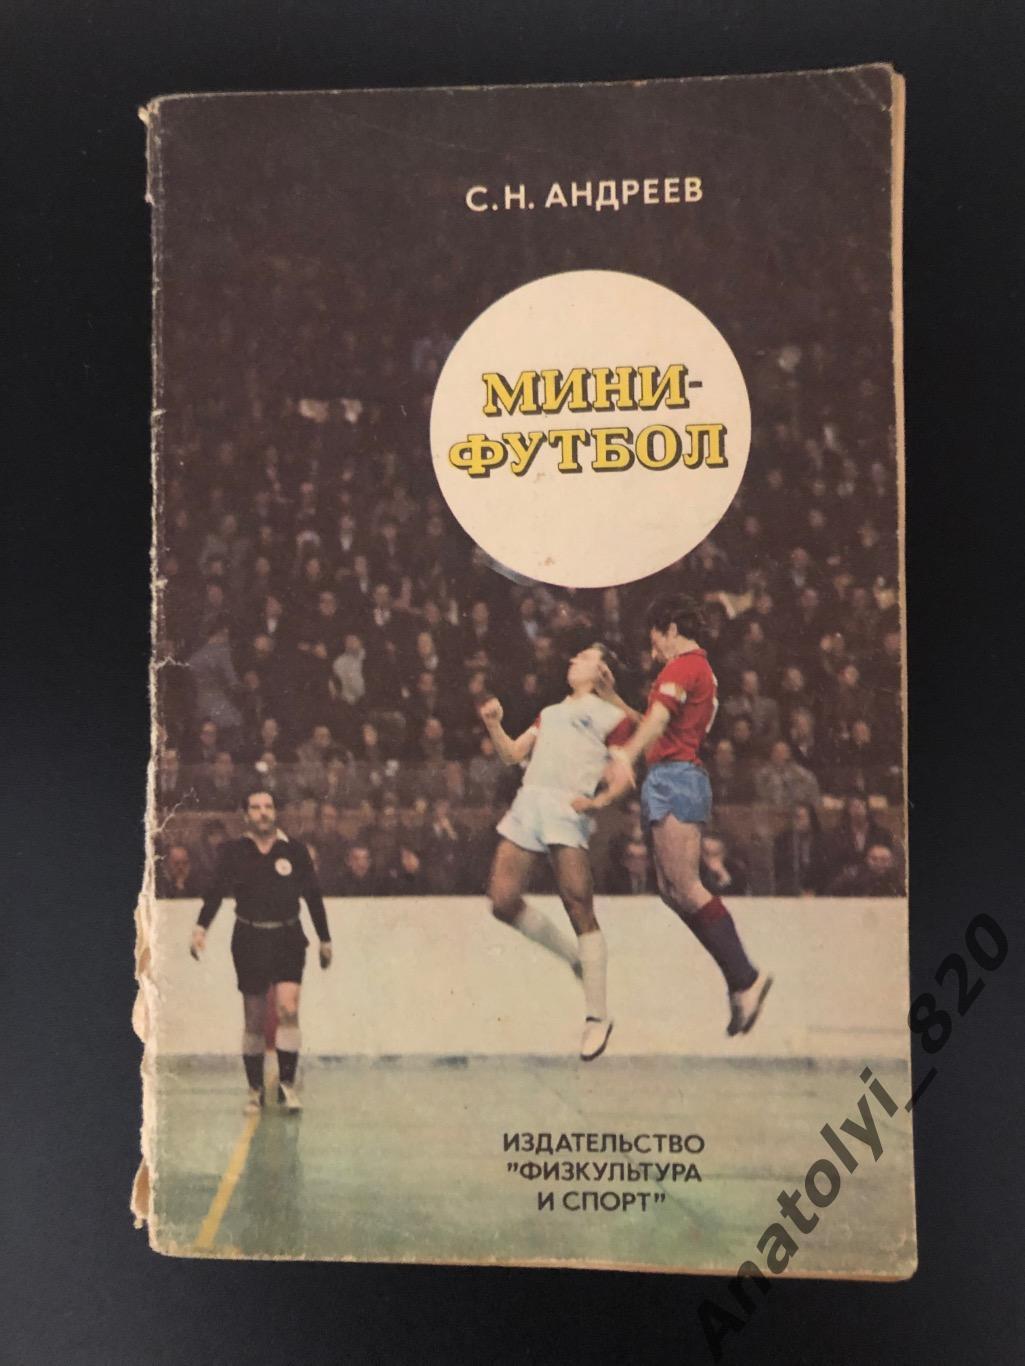 С.Н. Андреев. Мини-футбол, Москва 1978 год